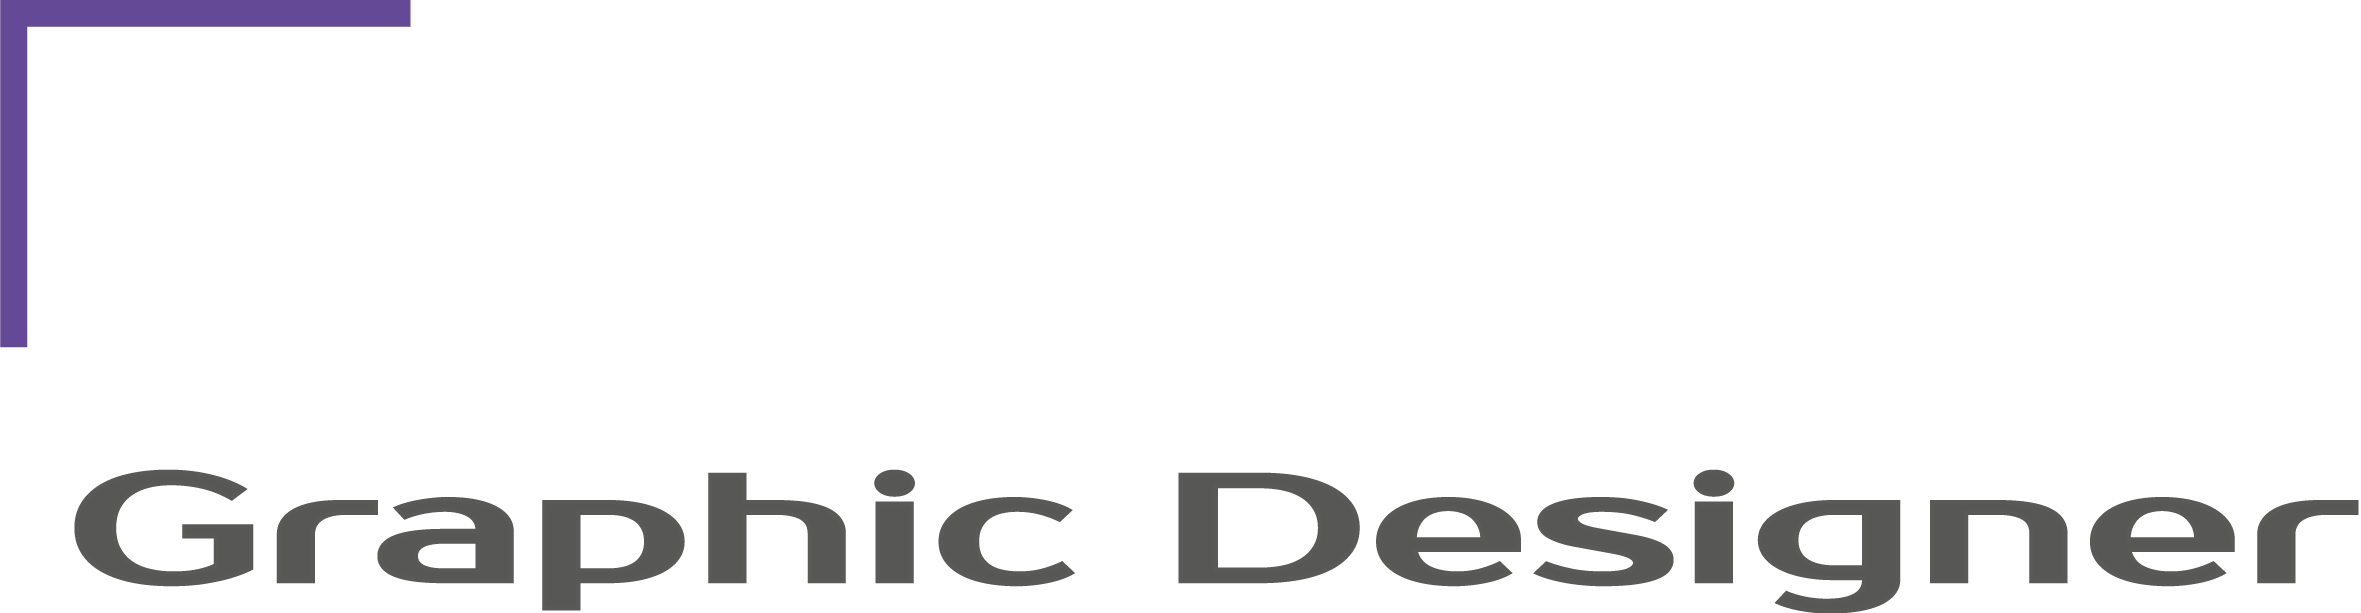 Logo warvick illich